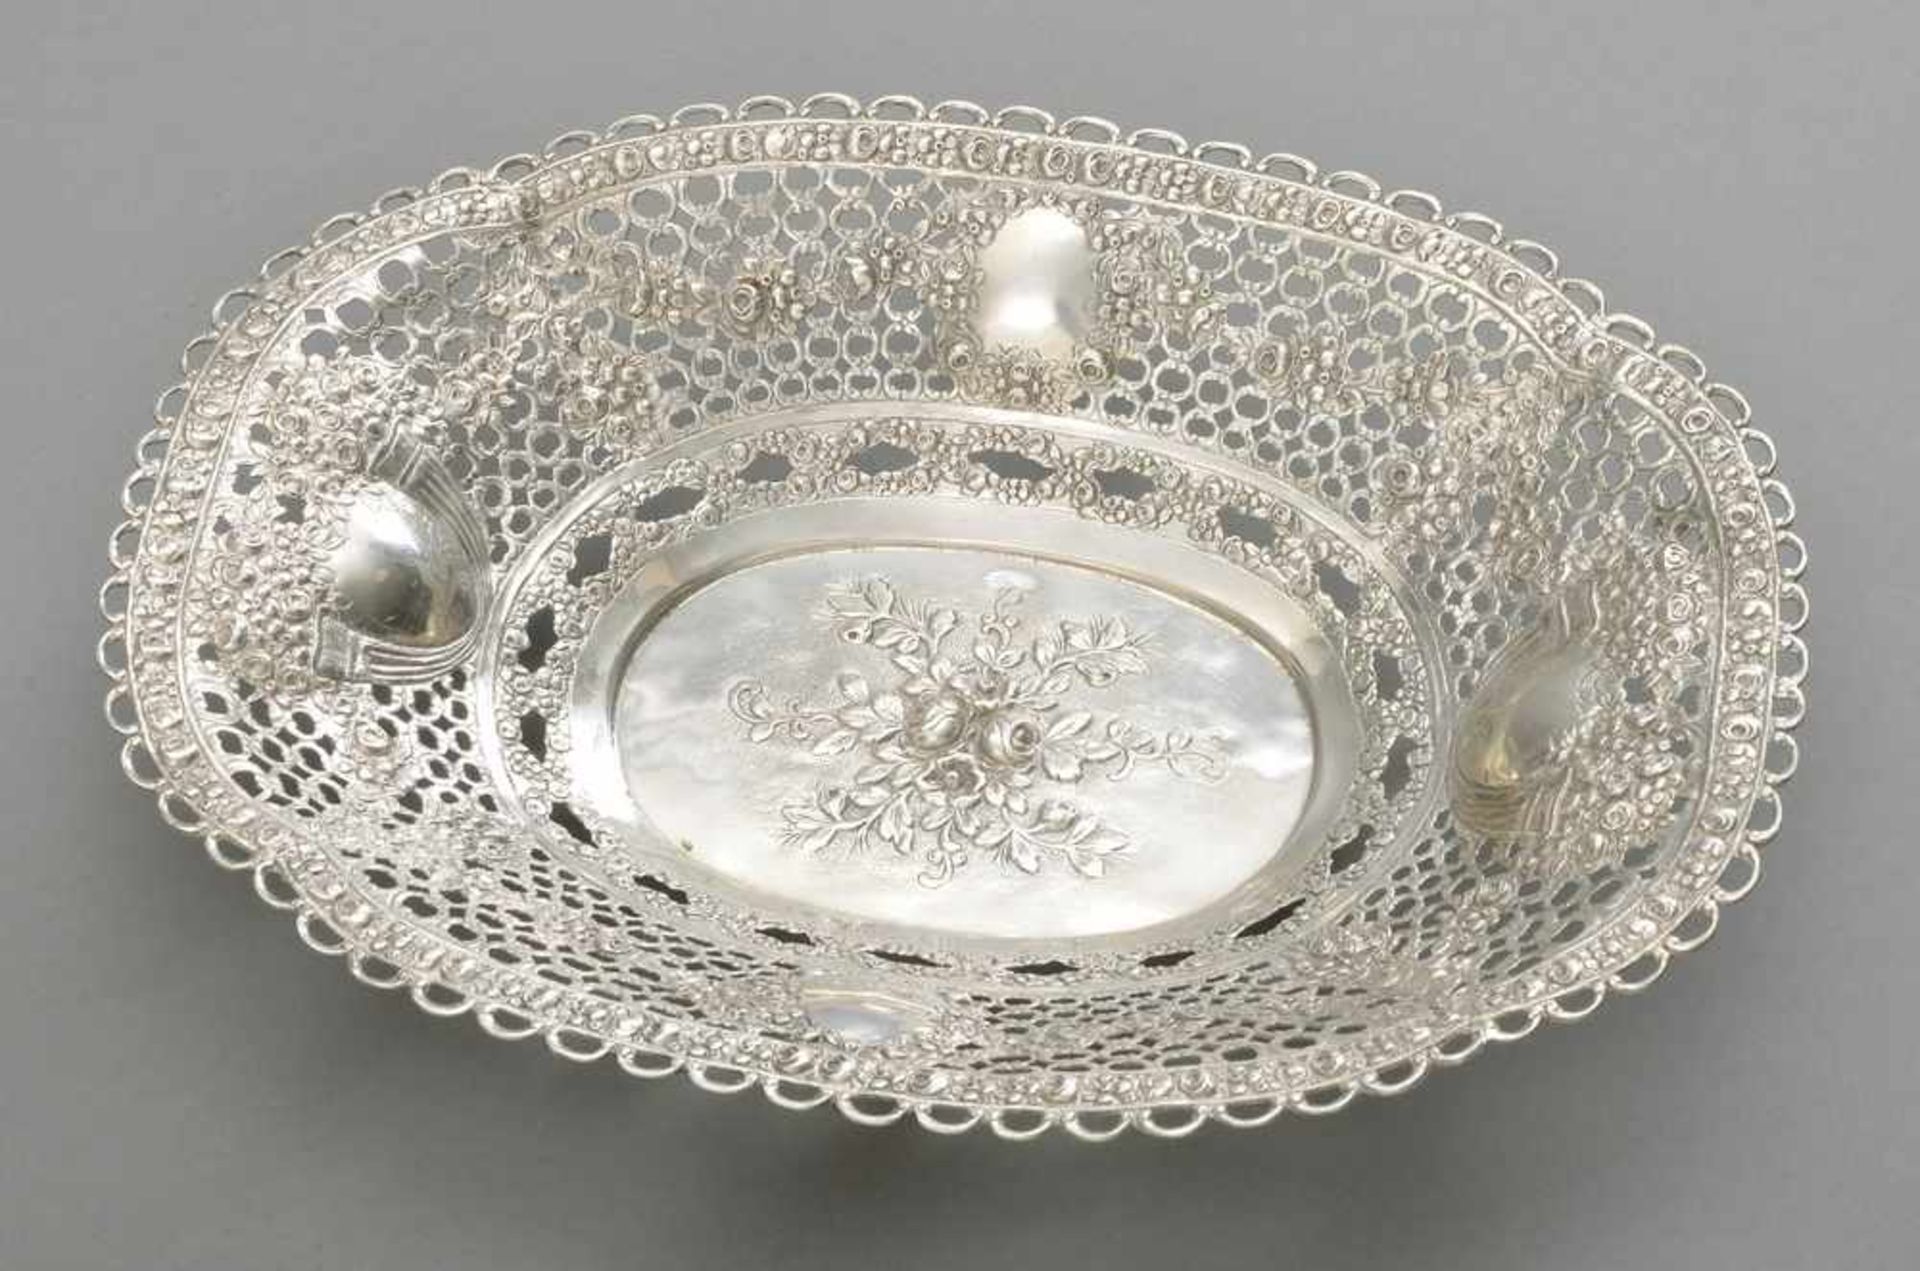 Ovale Schale mit durchbrochenem Rand und floralem Dekor, Silber 800, 399g, 30,5x23cm